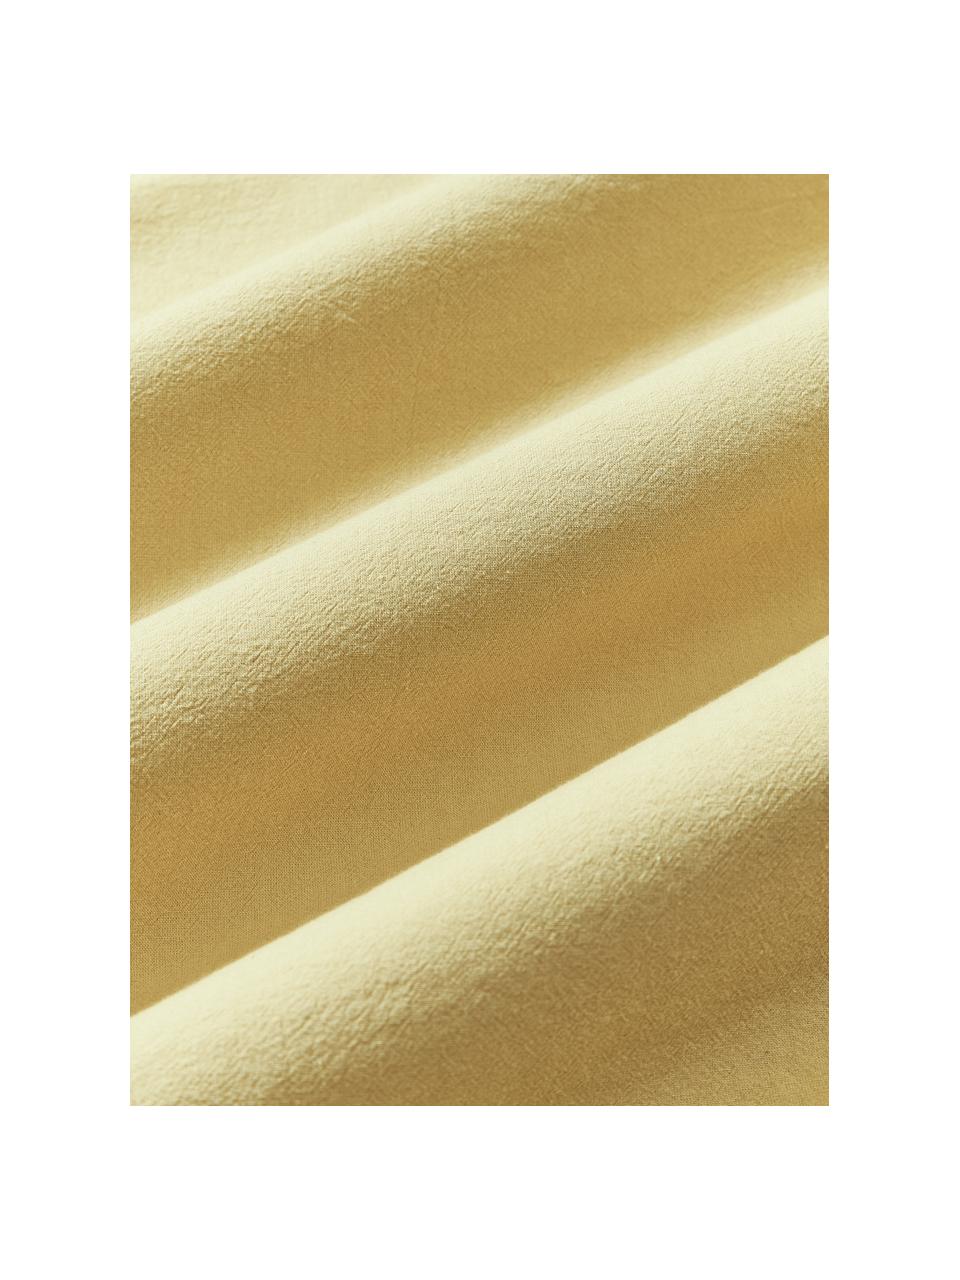 Lenzuolo in cotone percalle Abra, Giallo senape, Larg. 240 x Lung. 280 cm